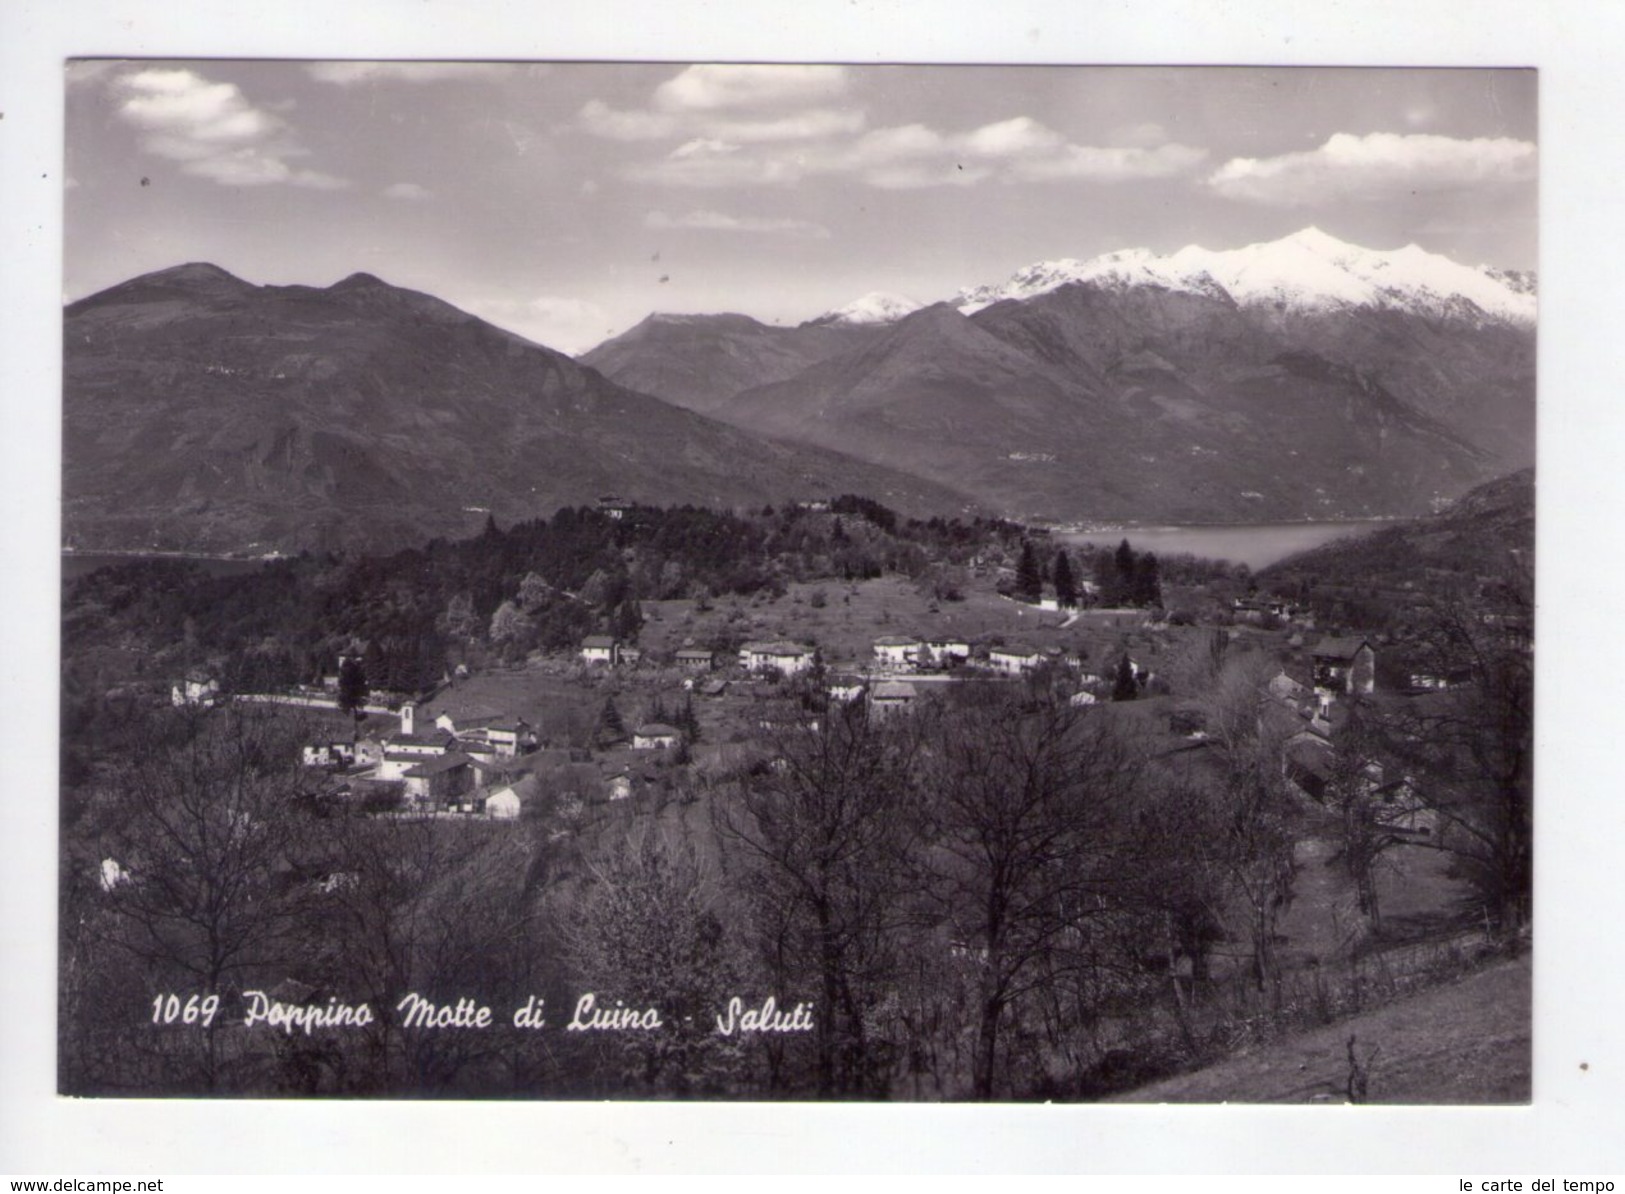 Cartolina Poppino Motte Di Luino (Varese) - Saluti. 1964 - Luino